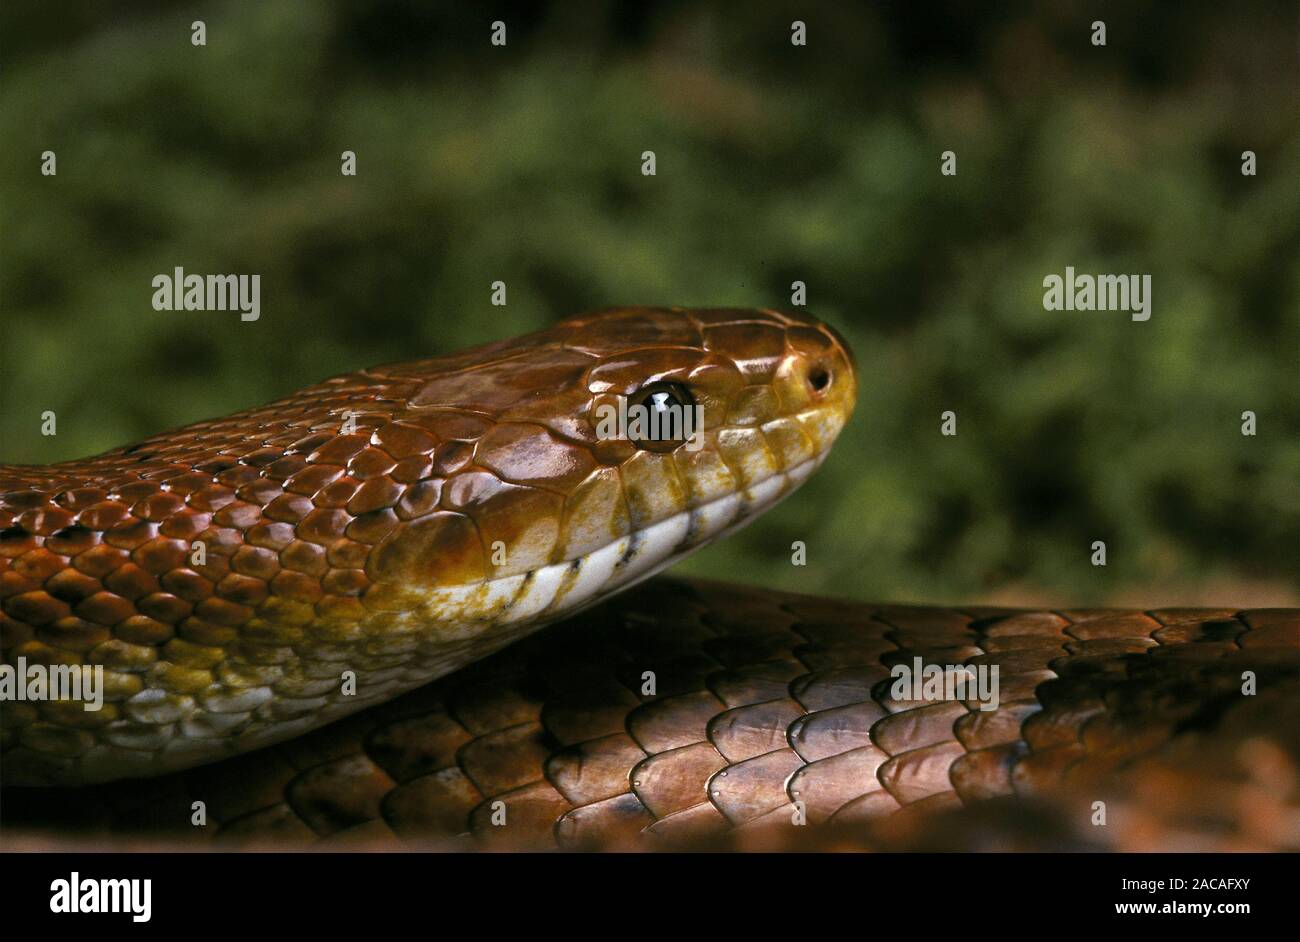 Kornnatter, Elaphe guttata, red rat snake, corn snake Stock Photo